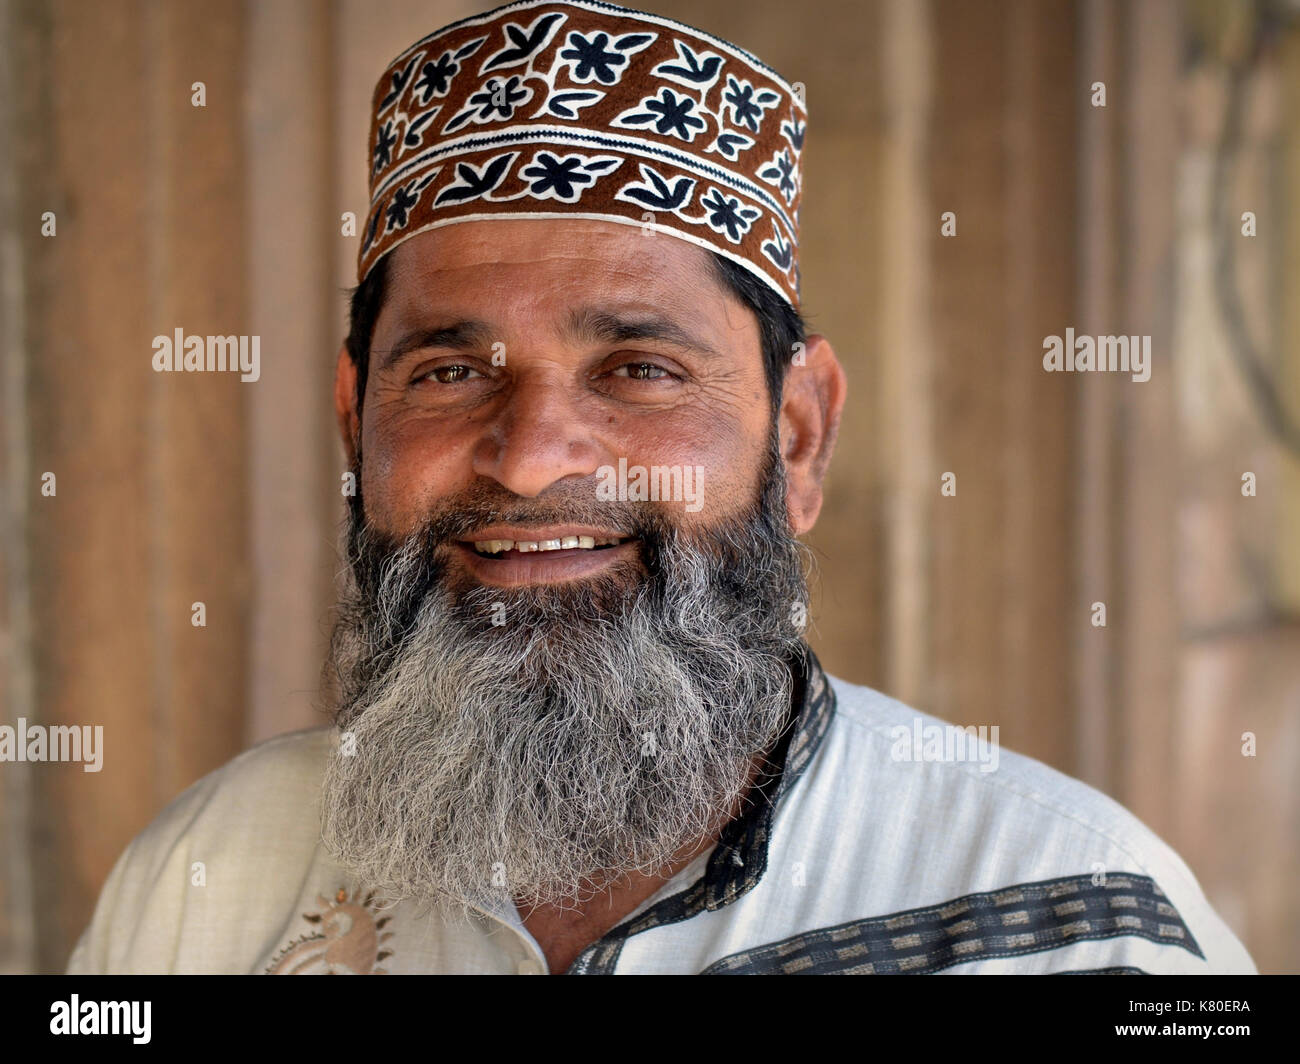 L'homme musulman indien à barbe pleine taqiyah, taqiyah, porte une casquette de prière islamique à motifs de style omanais et sourit pour l'appareil photo. Banque D'Images